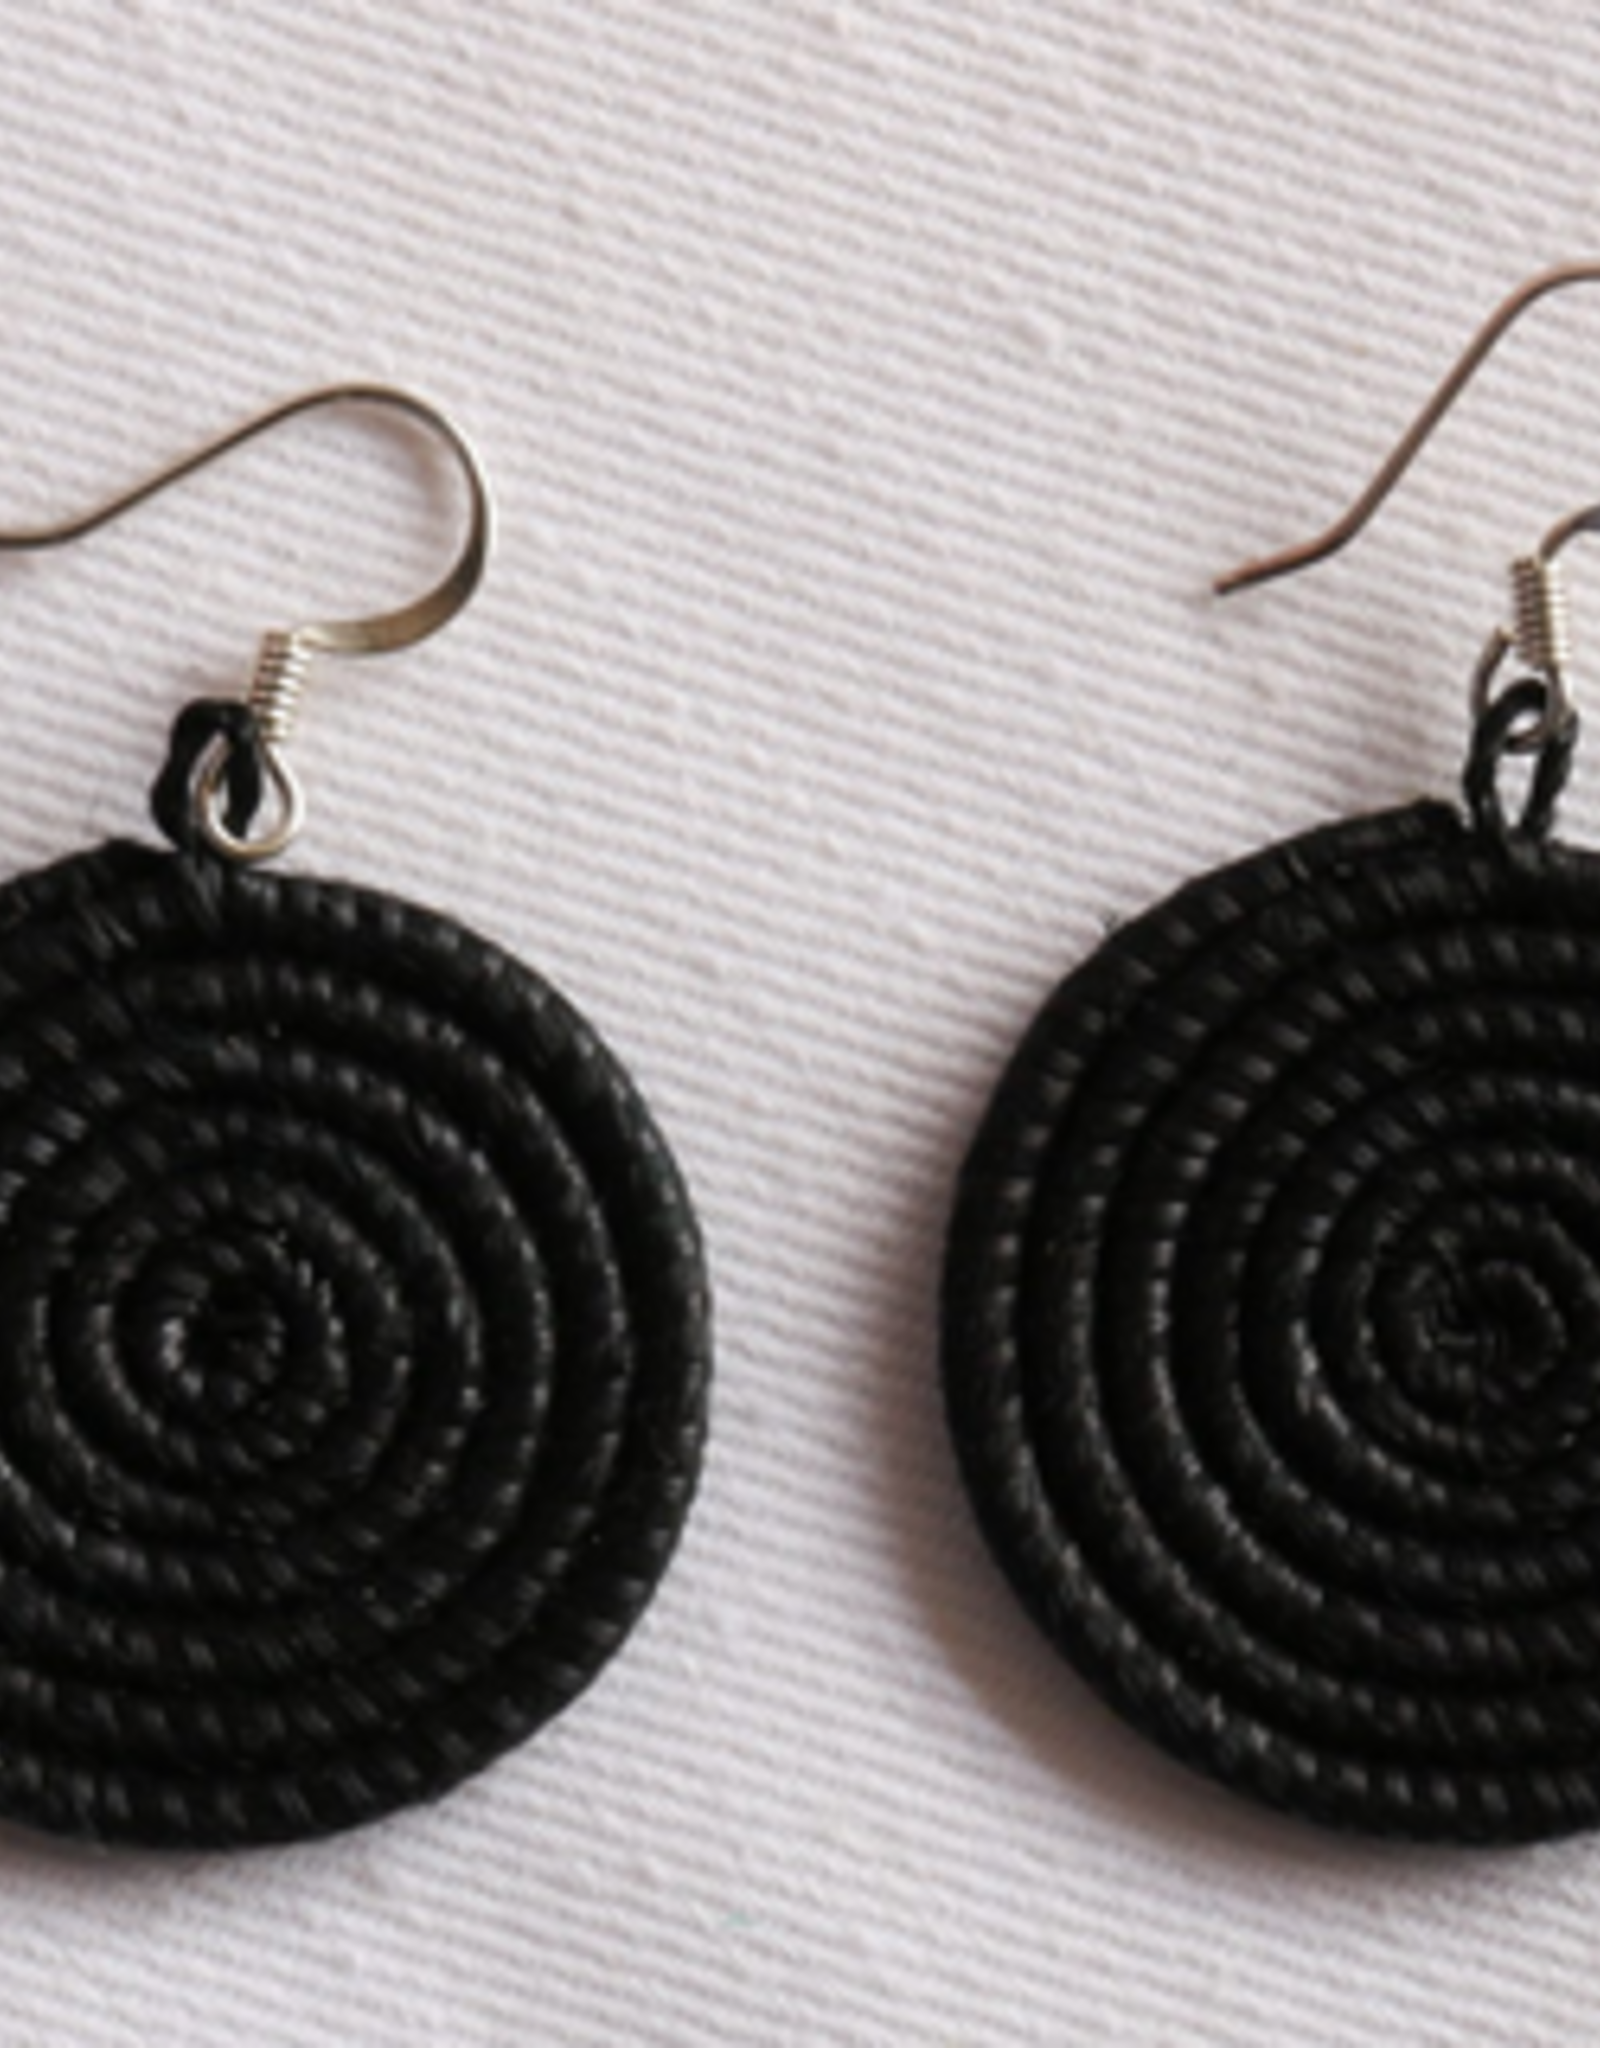 Rwanda Earrings Small Disc Black Azizi Life  - Rwanda